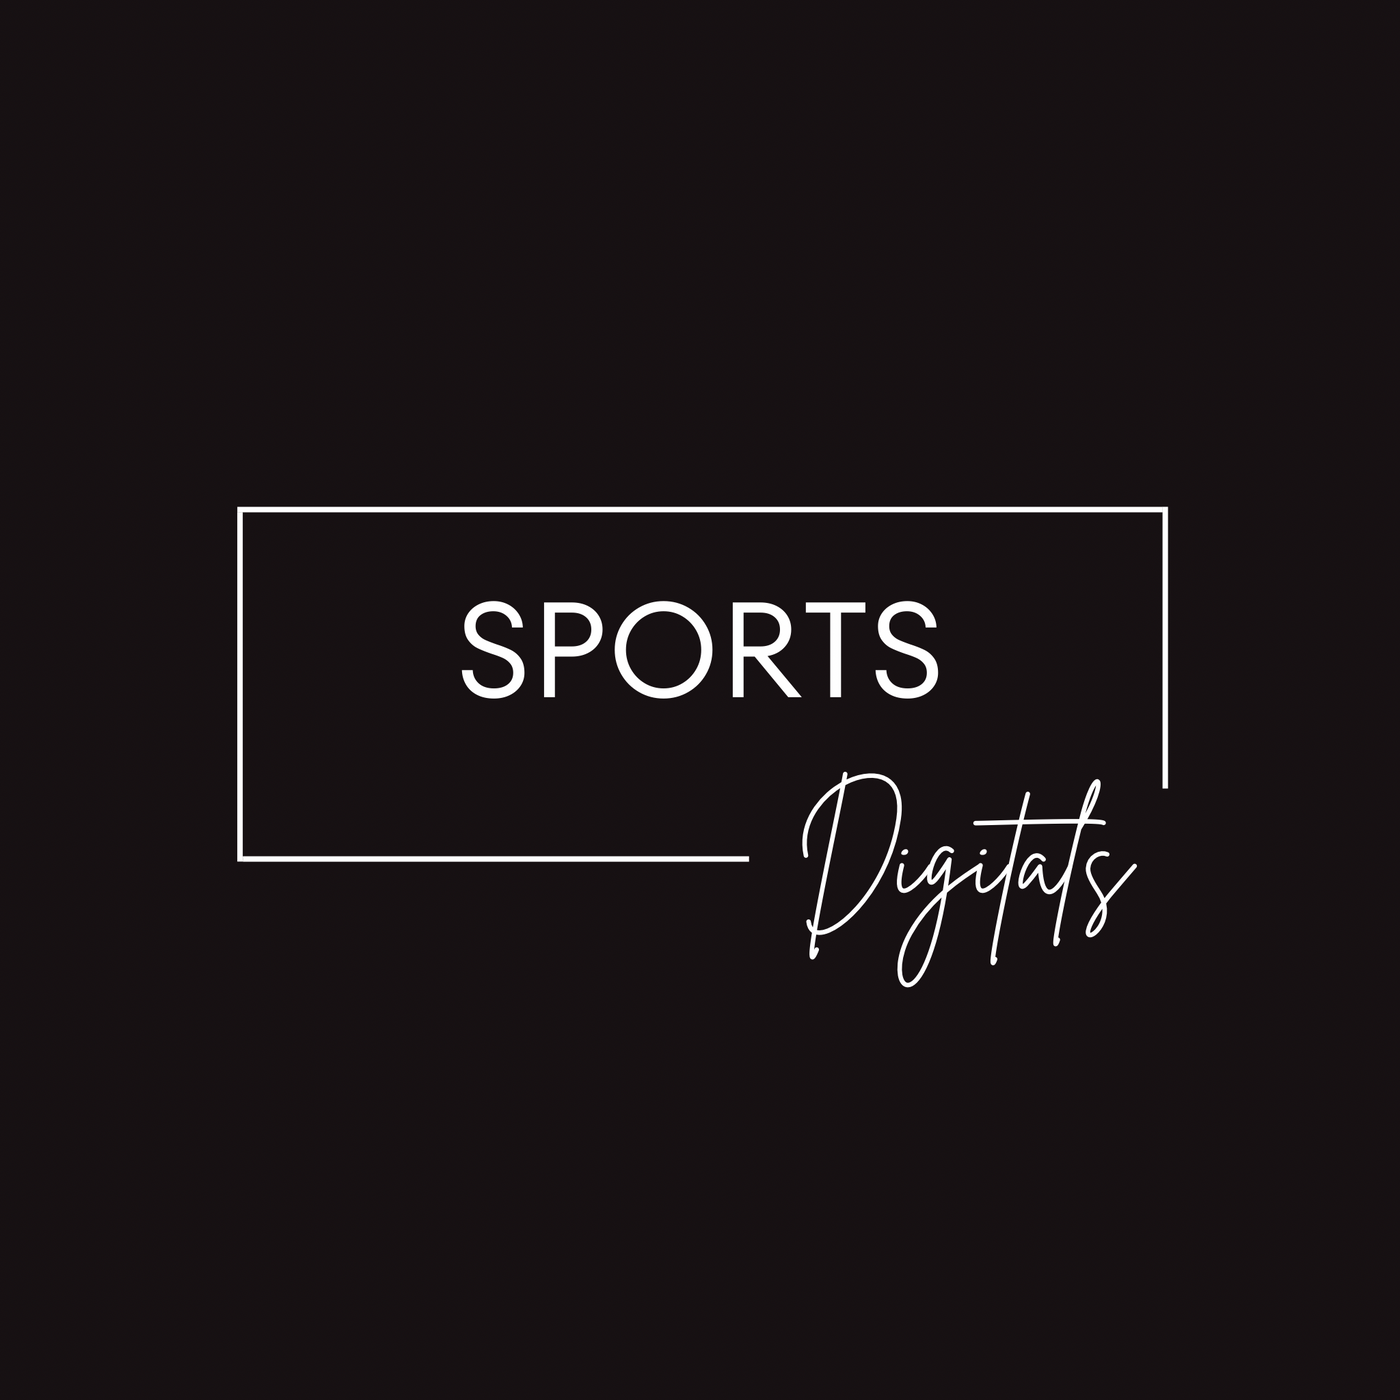 Sports (Digital Files)